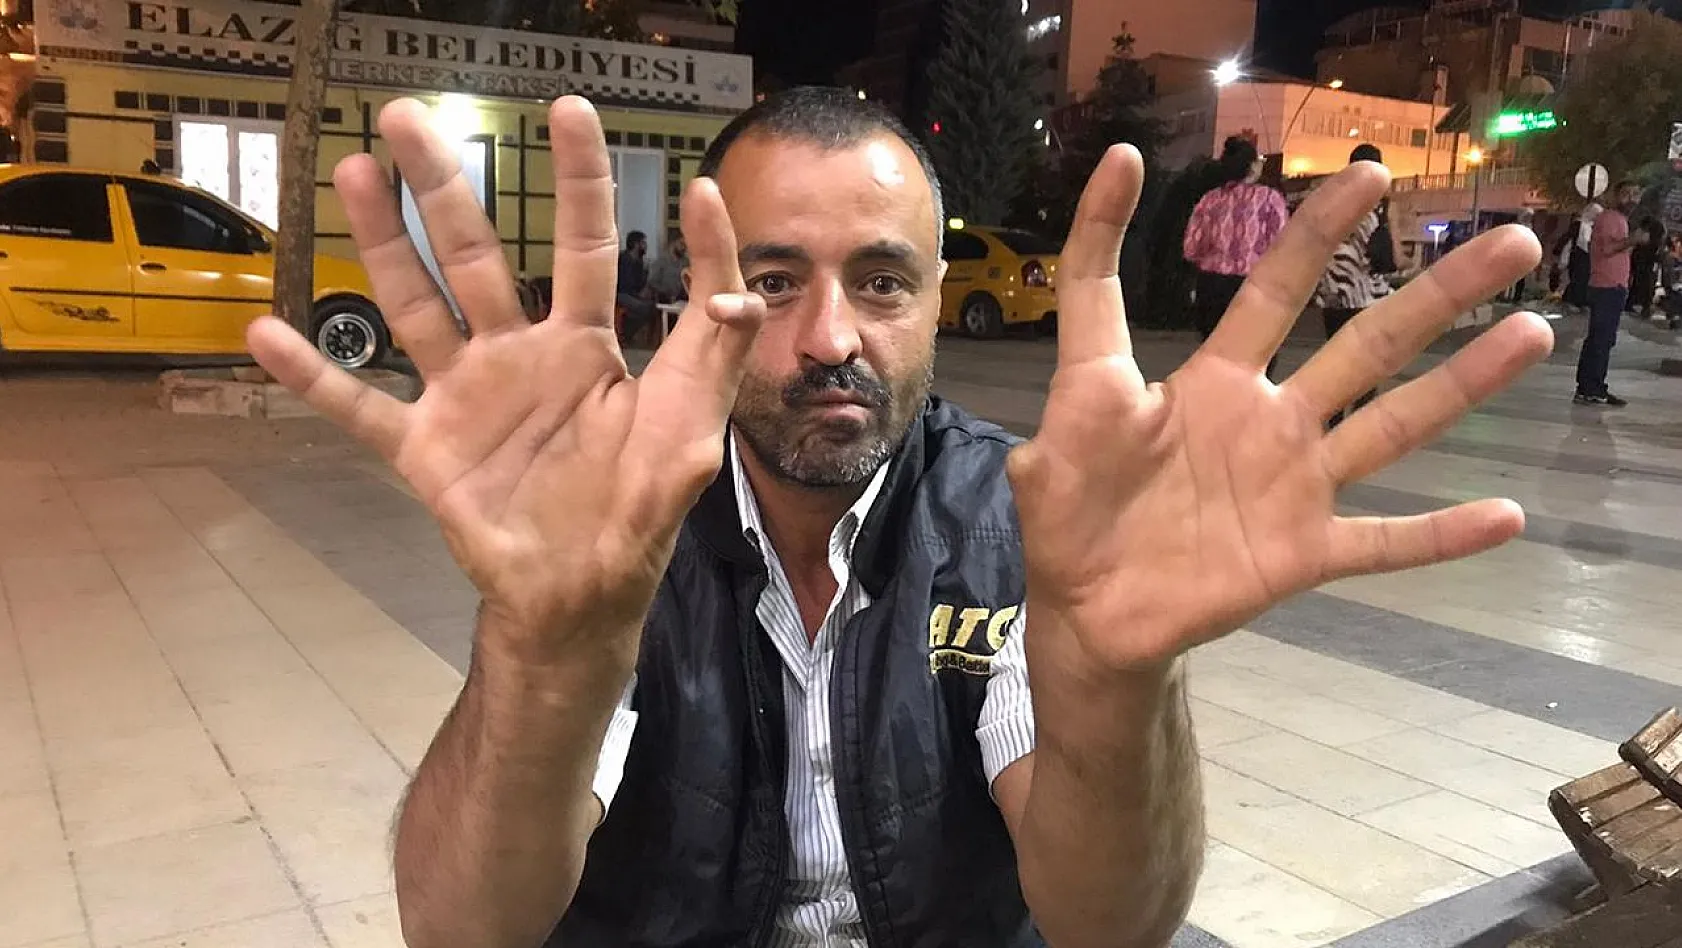 Elazığ'da 6 parmaklı kişi görenleri hayrete düşürüyor